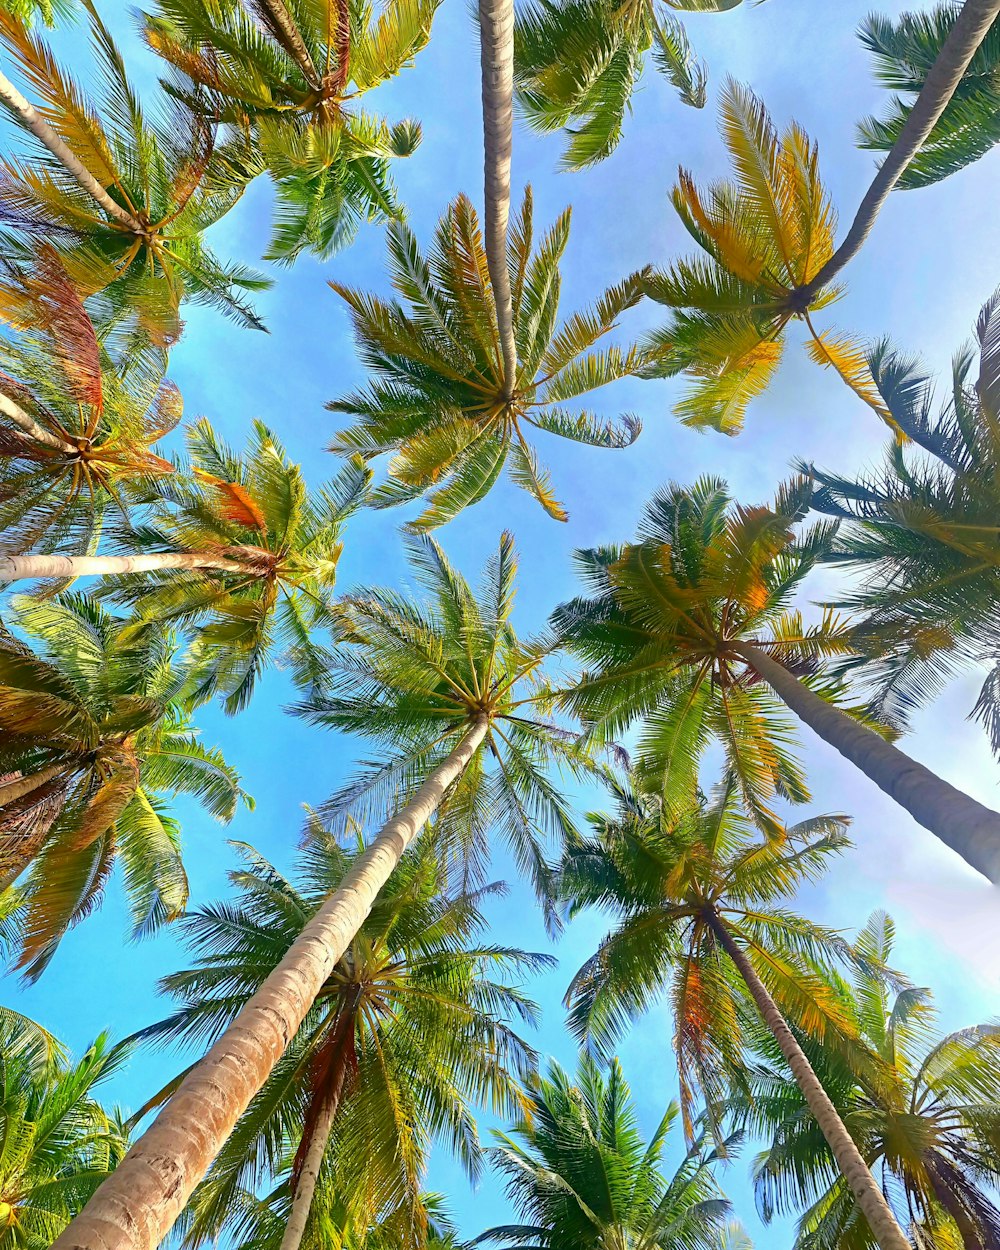 angolo basso degli alberi di cocco sotto il cielo blu